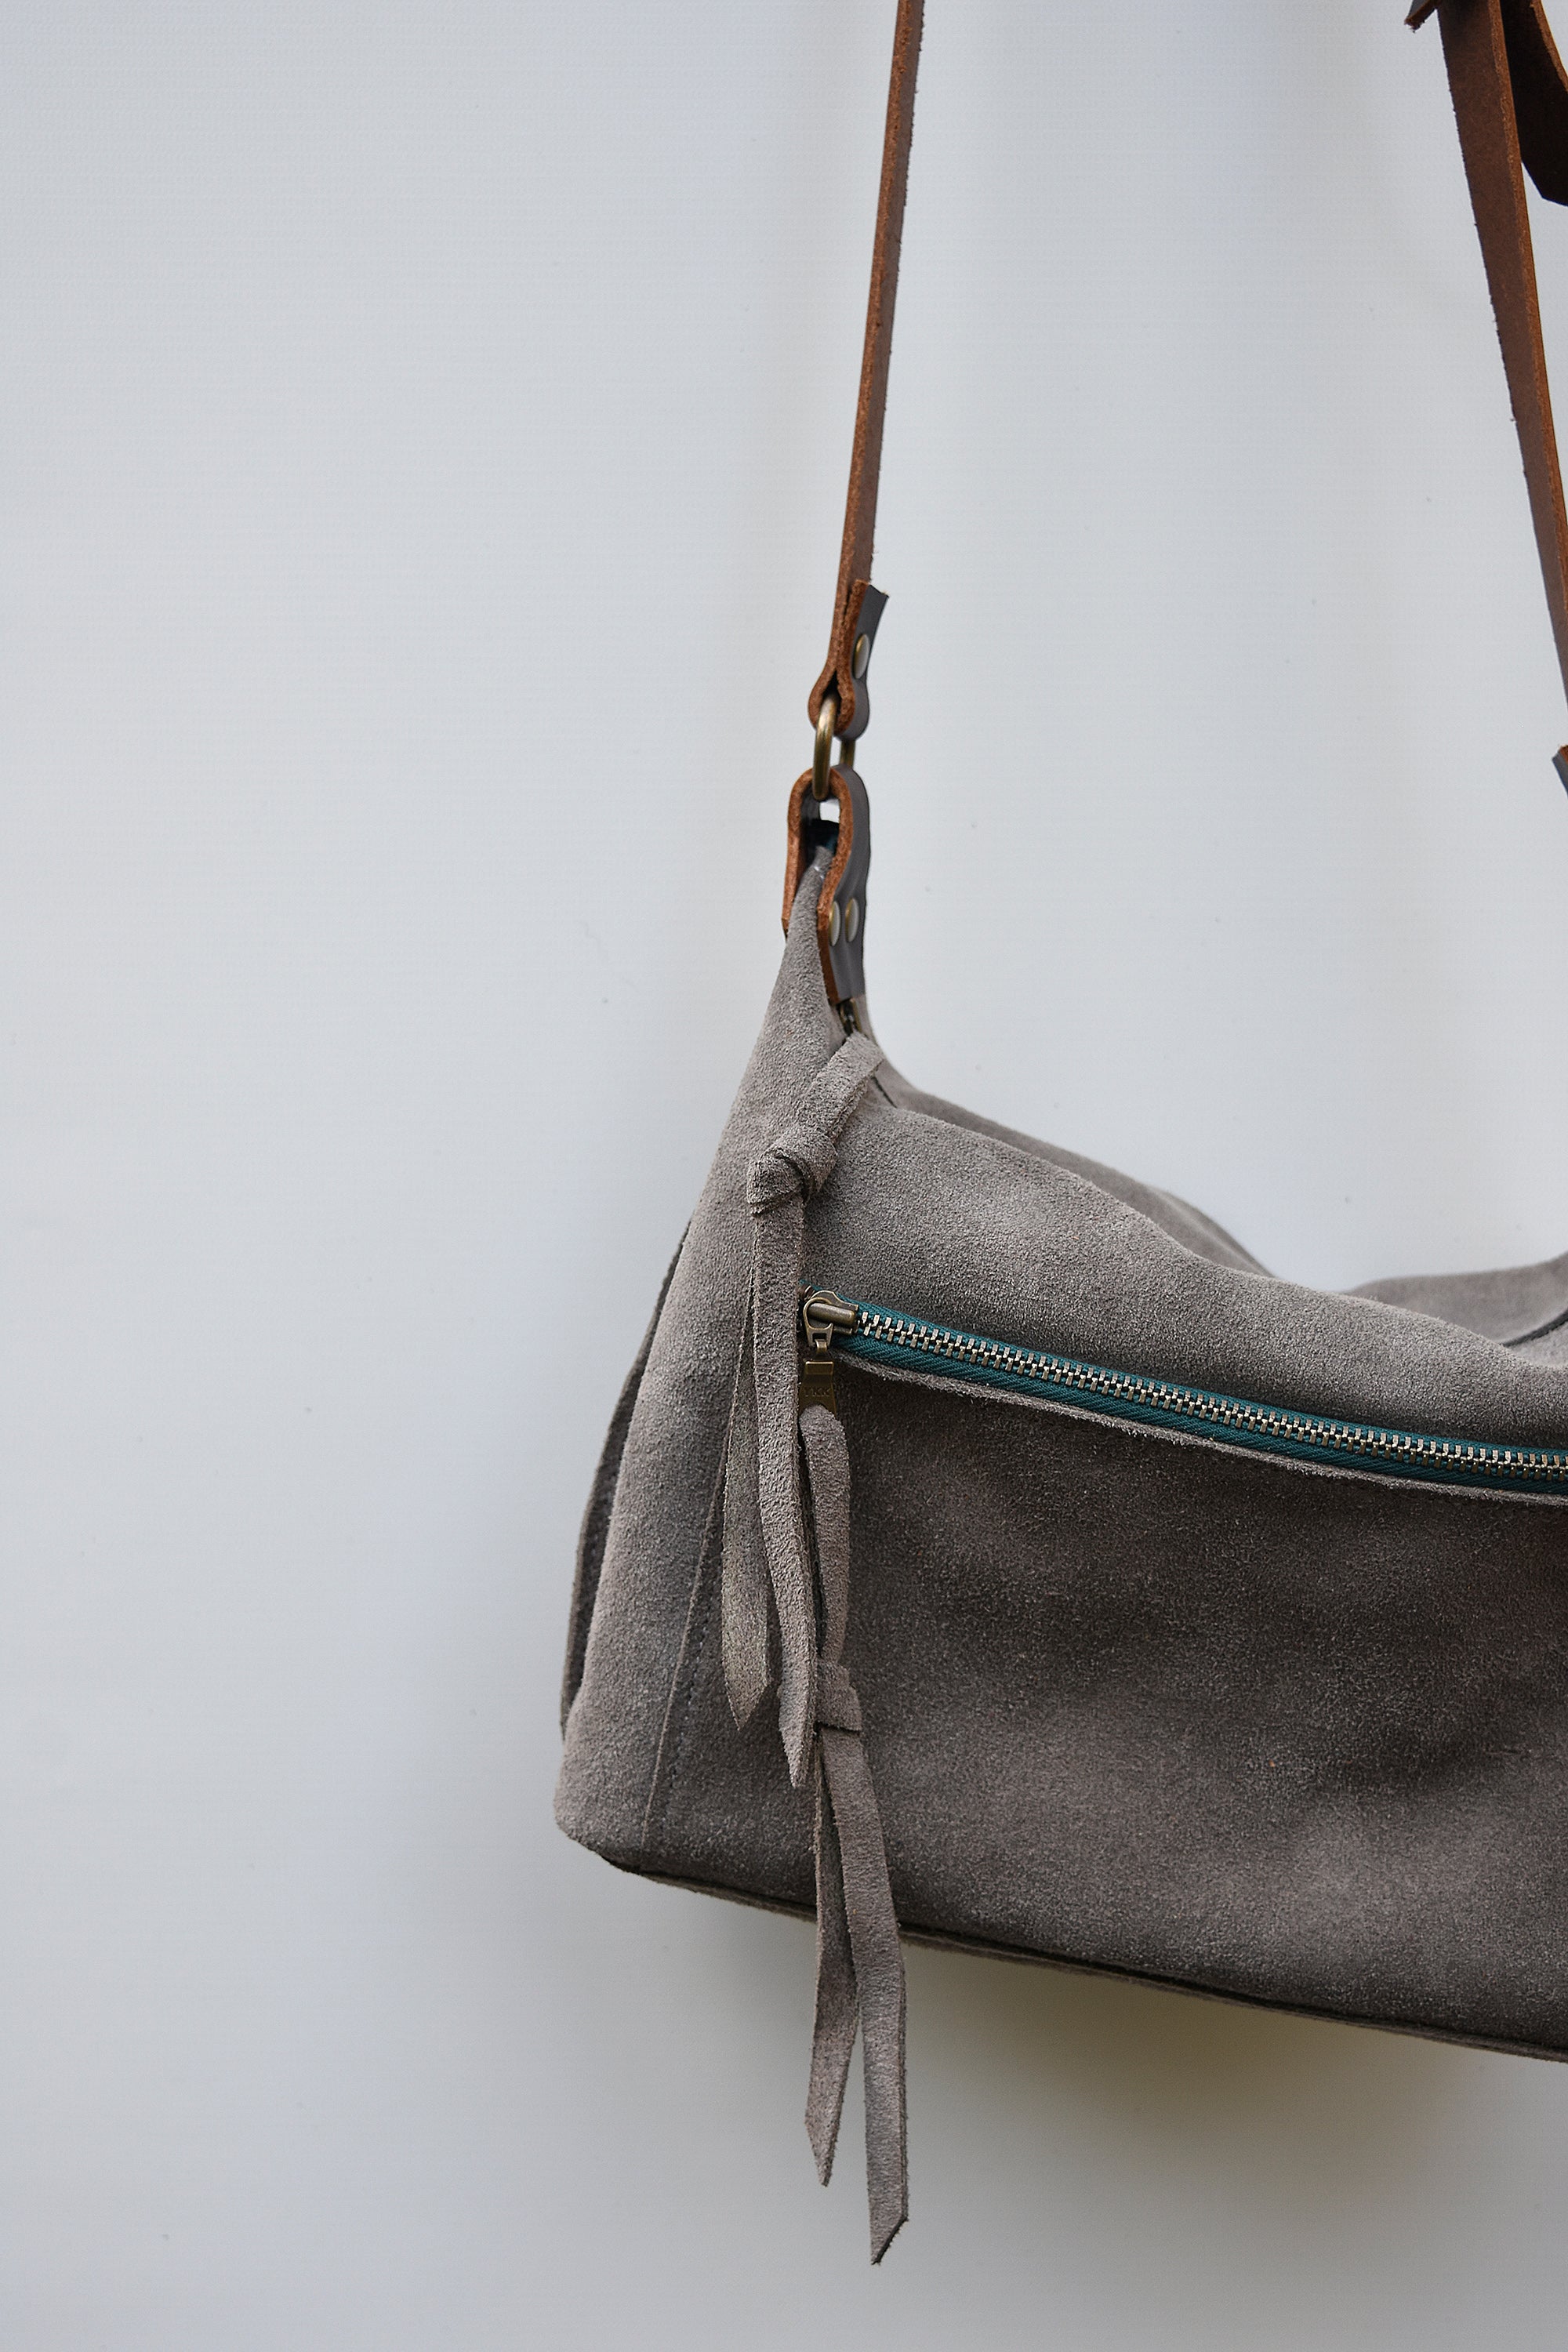 Womens Genuine Leather Purse Adjustable Strap Mid Size Multi Pocket  Shoulder Bag Navy Blue